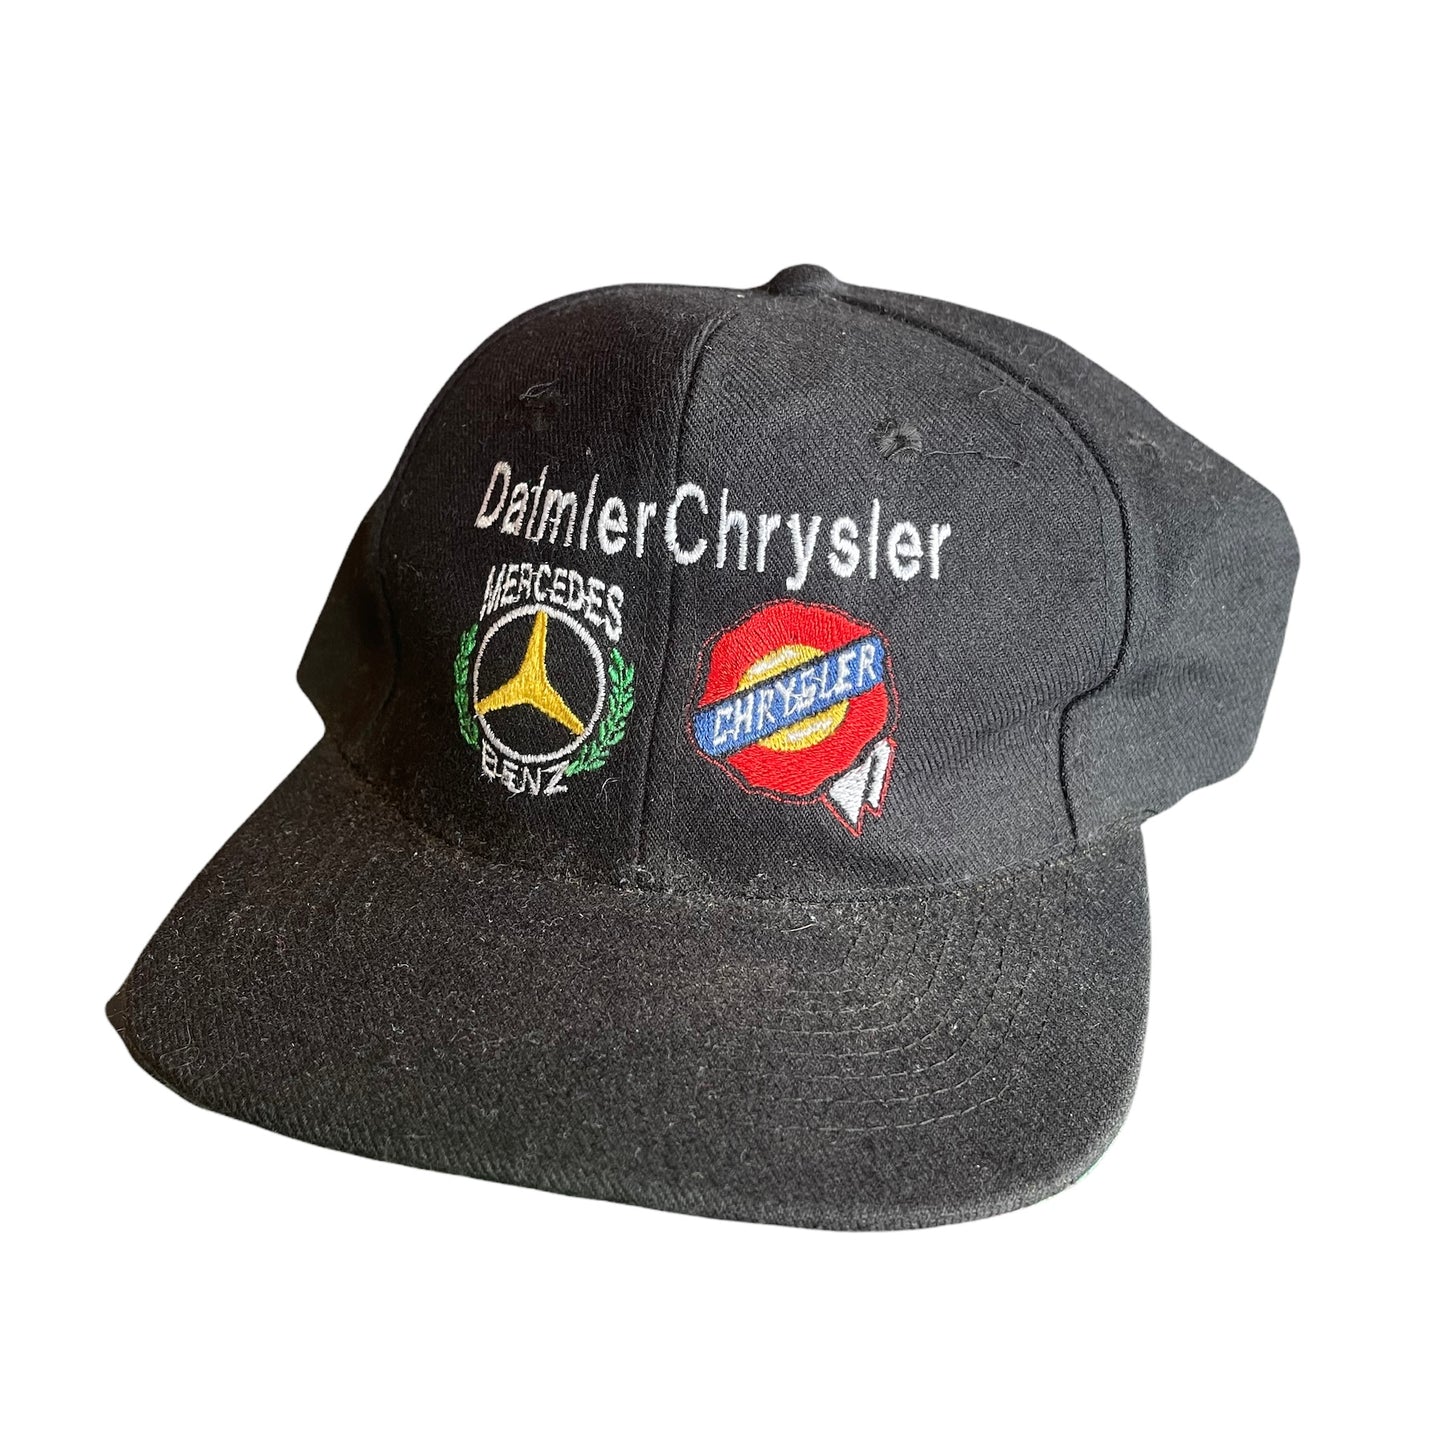 Vintage Mercedes Benz Daimler Chrysler Snap Back Hat